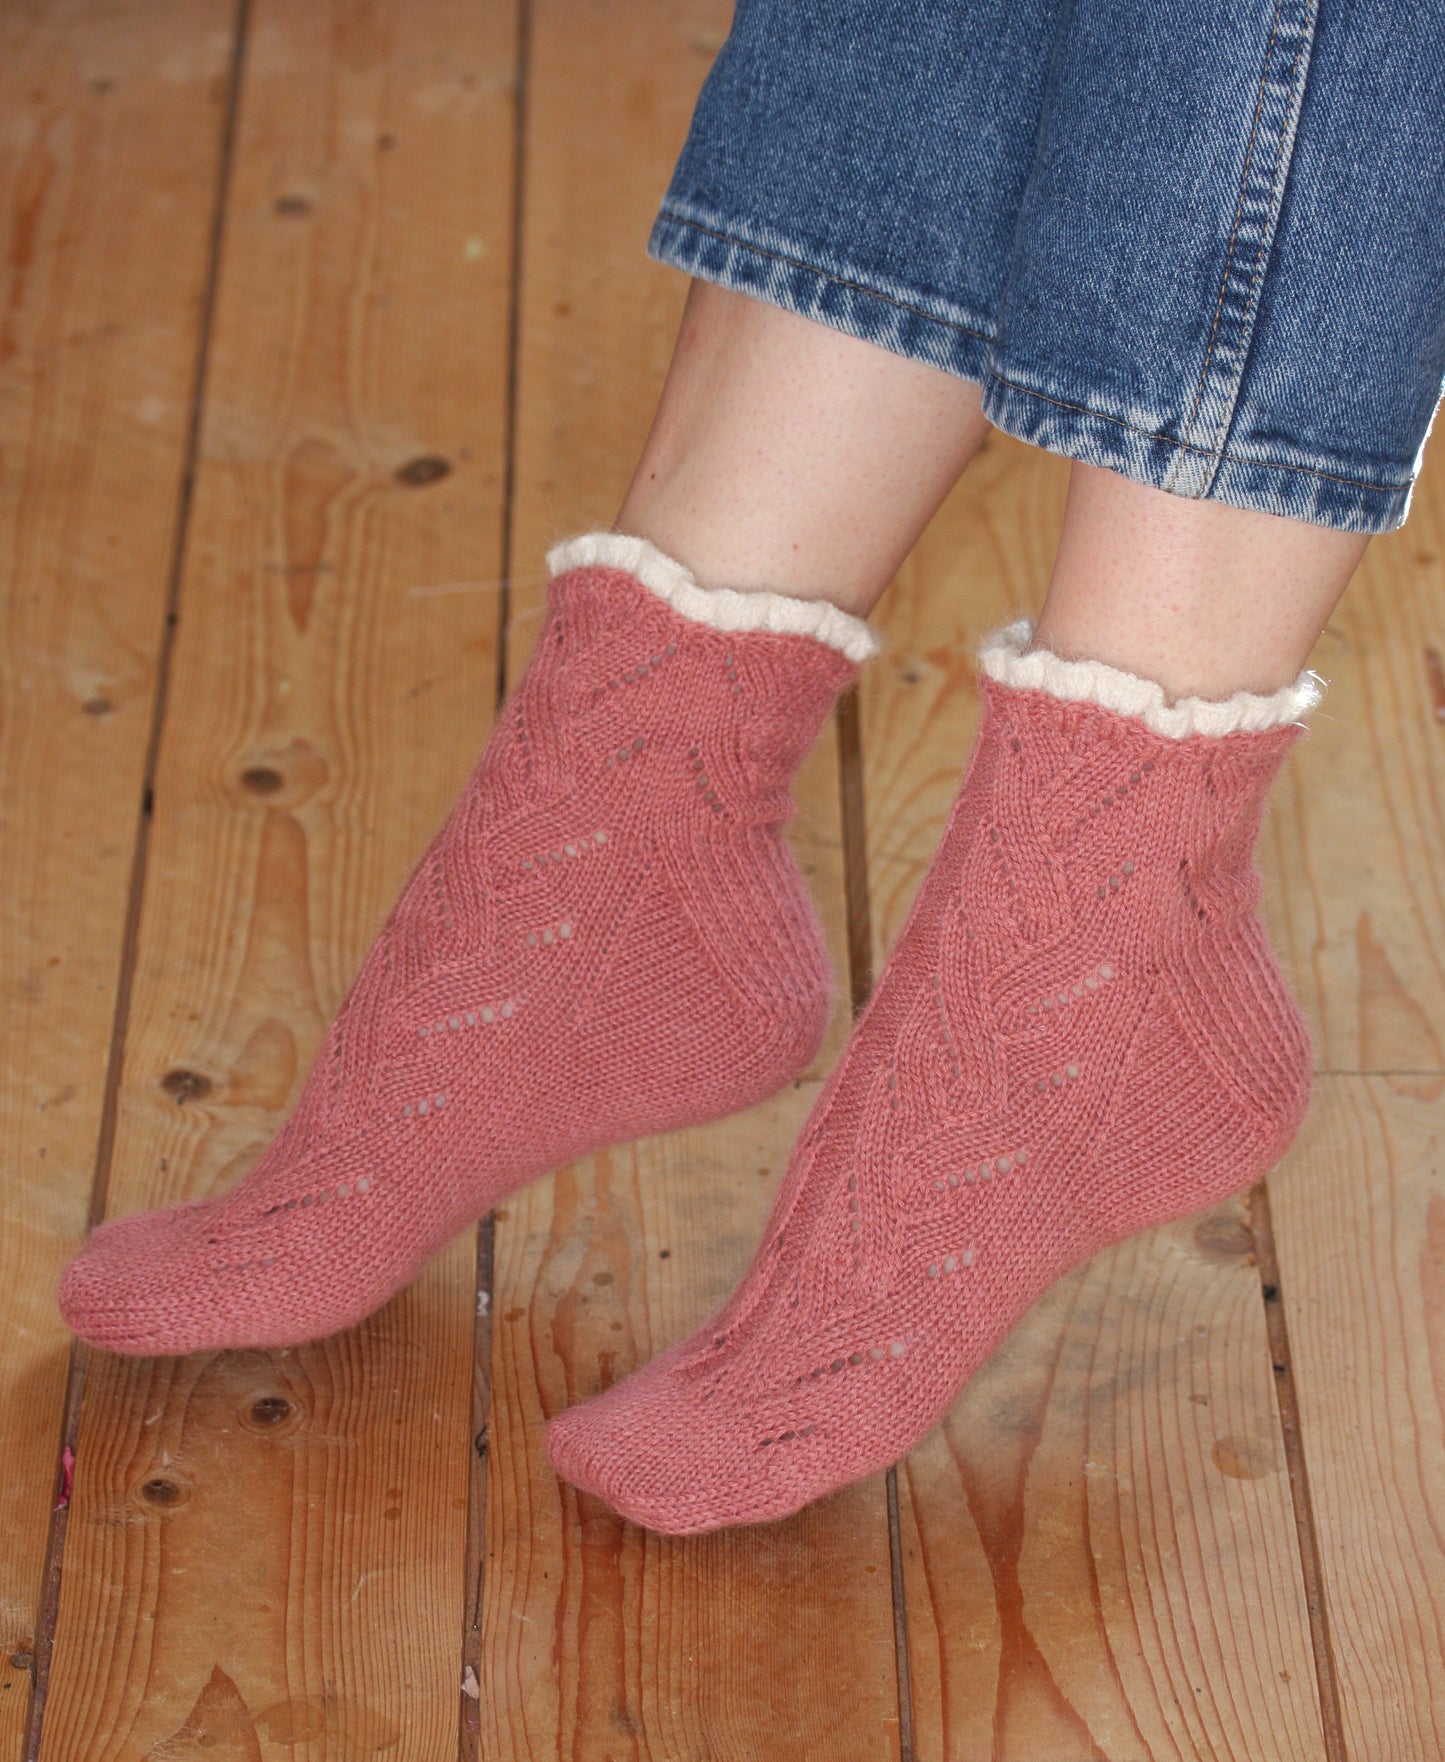 Buy hand knitted socks online